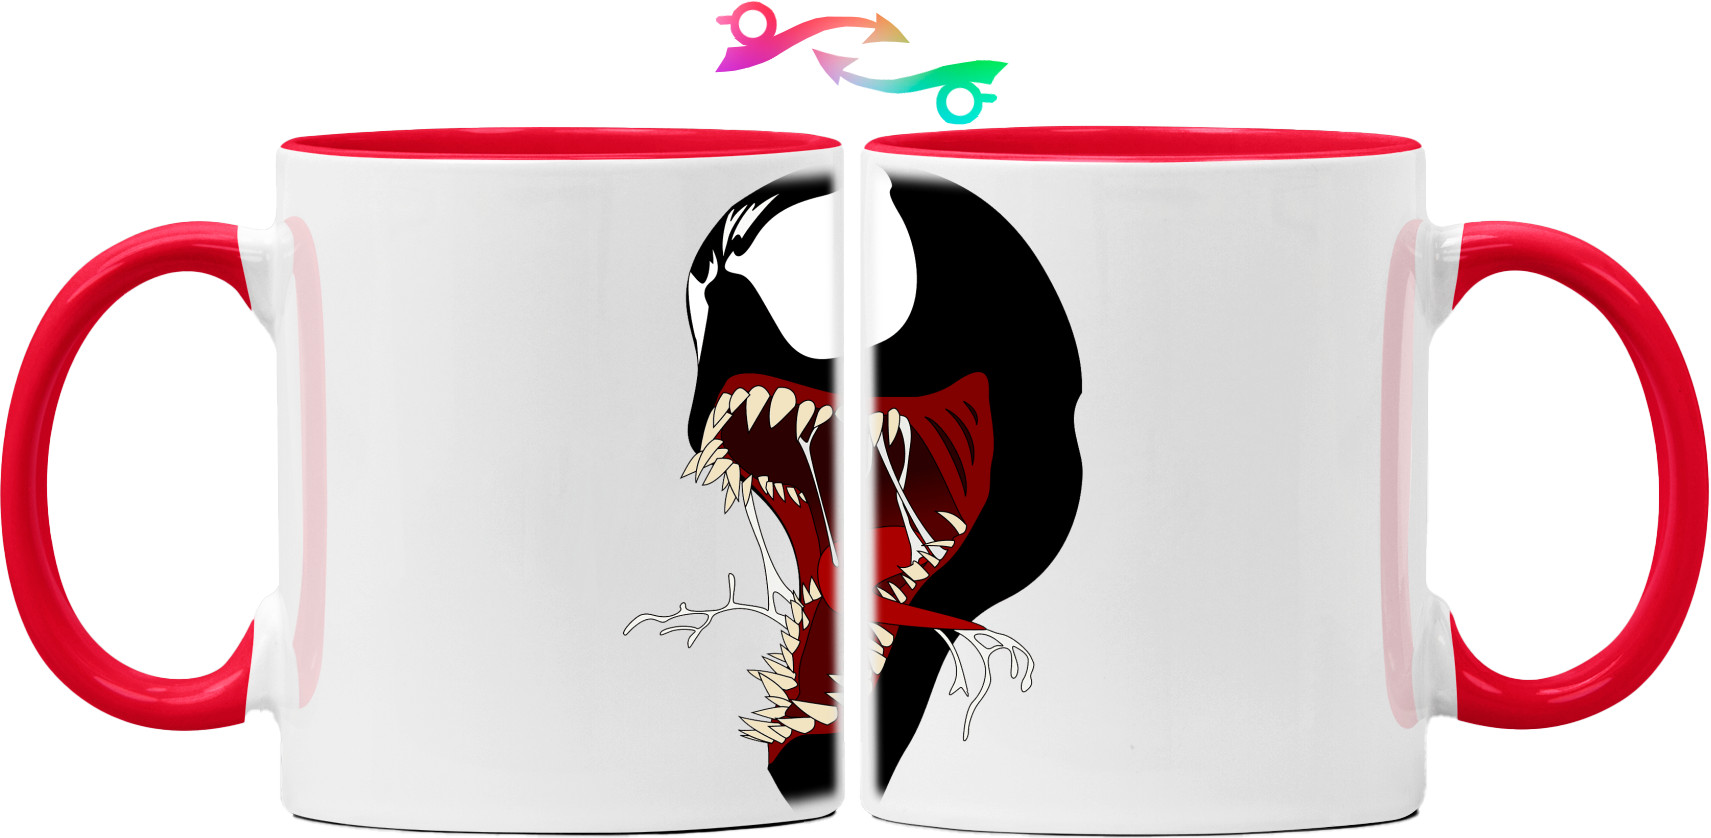 Venom jaw